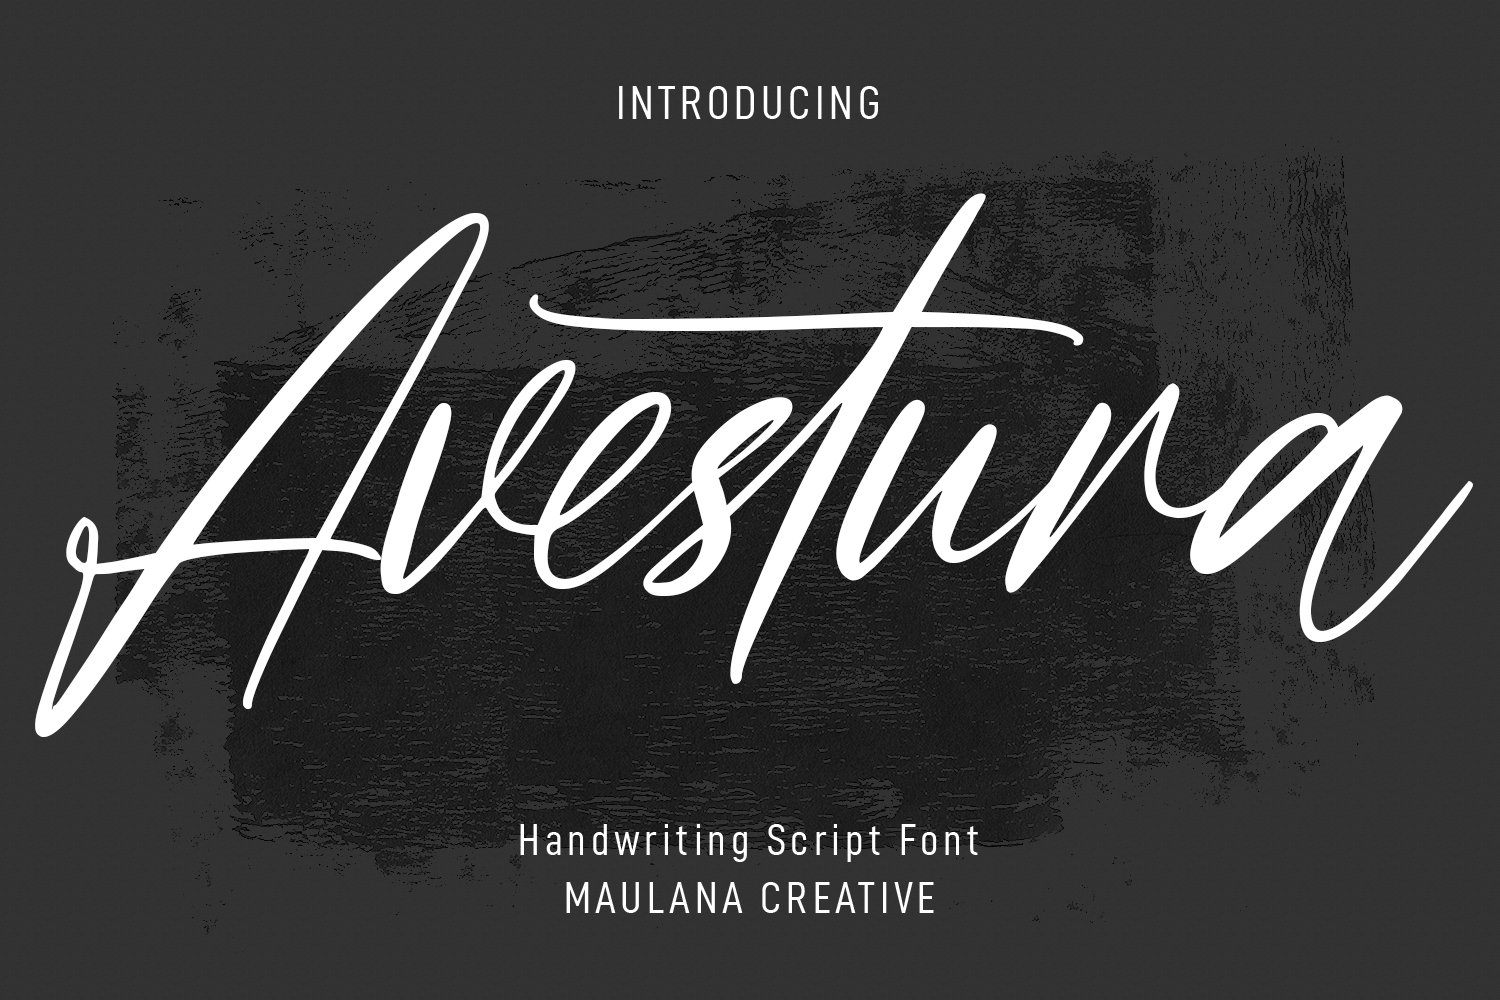 Avestura Signature Script Font cover image.